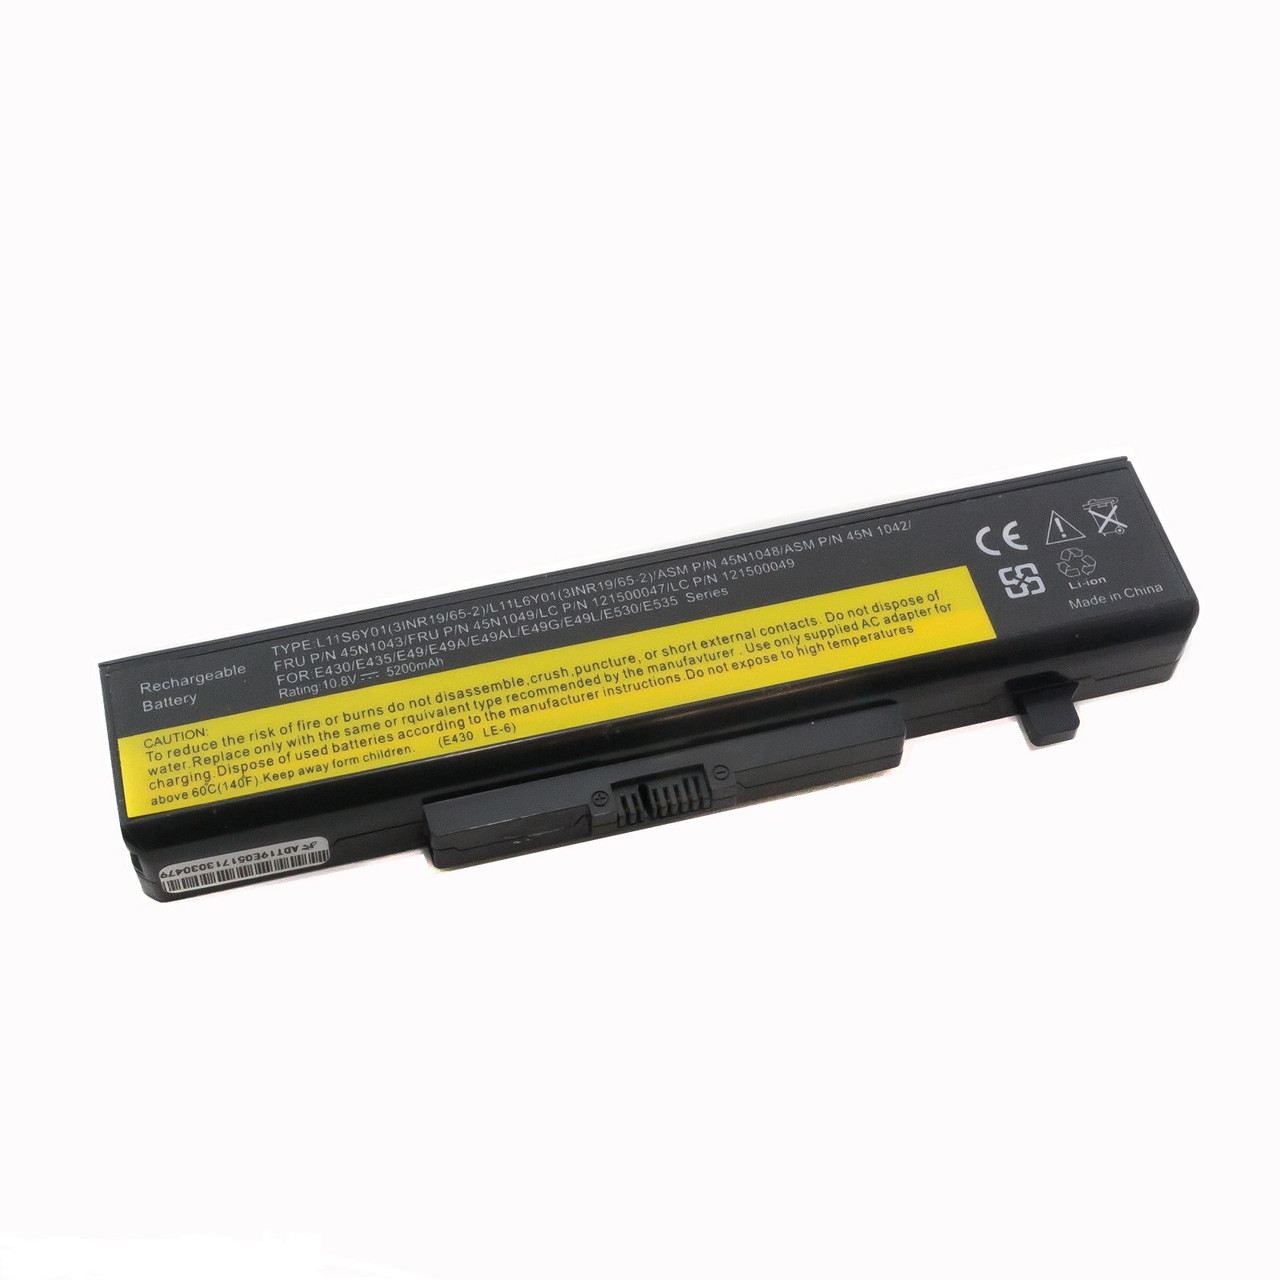 Оригинальный аккумулятор (батарея) для ноутбука Lenovo N580, N581, N585, N586 (L11S6Y01) 10.8V 48Wh